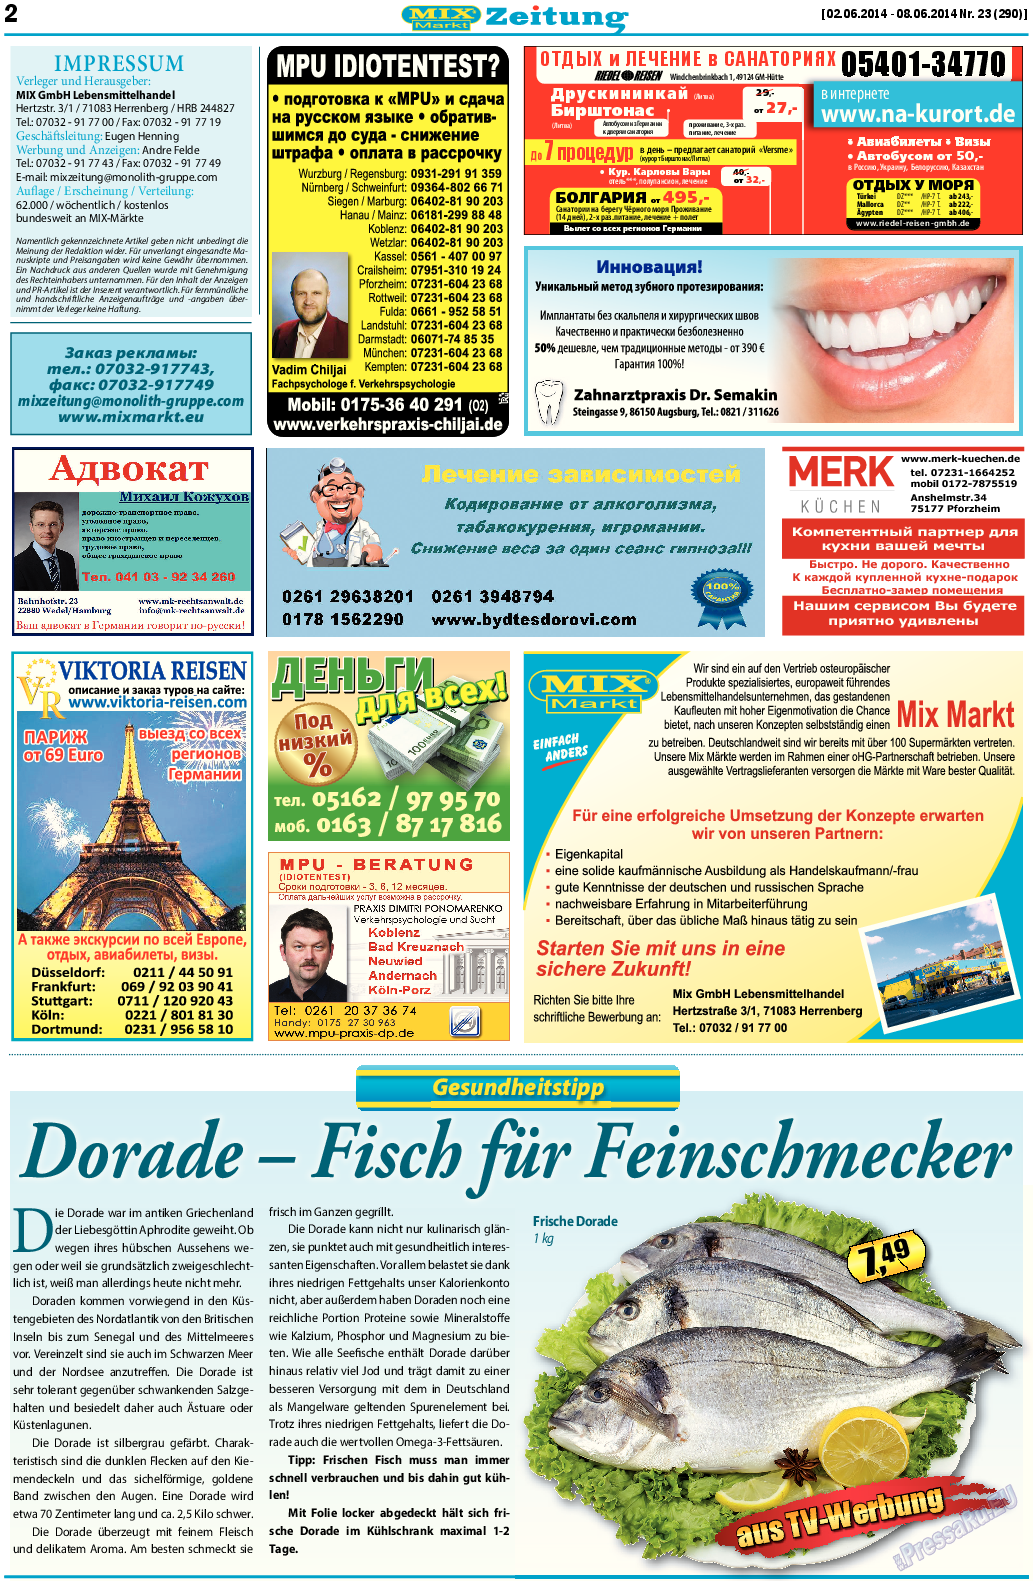 MIX-Markt Zeitung (газета). 2014 год, номер 23, стр. 2